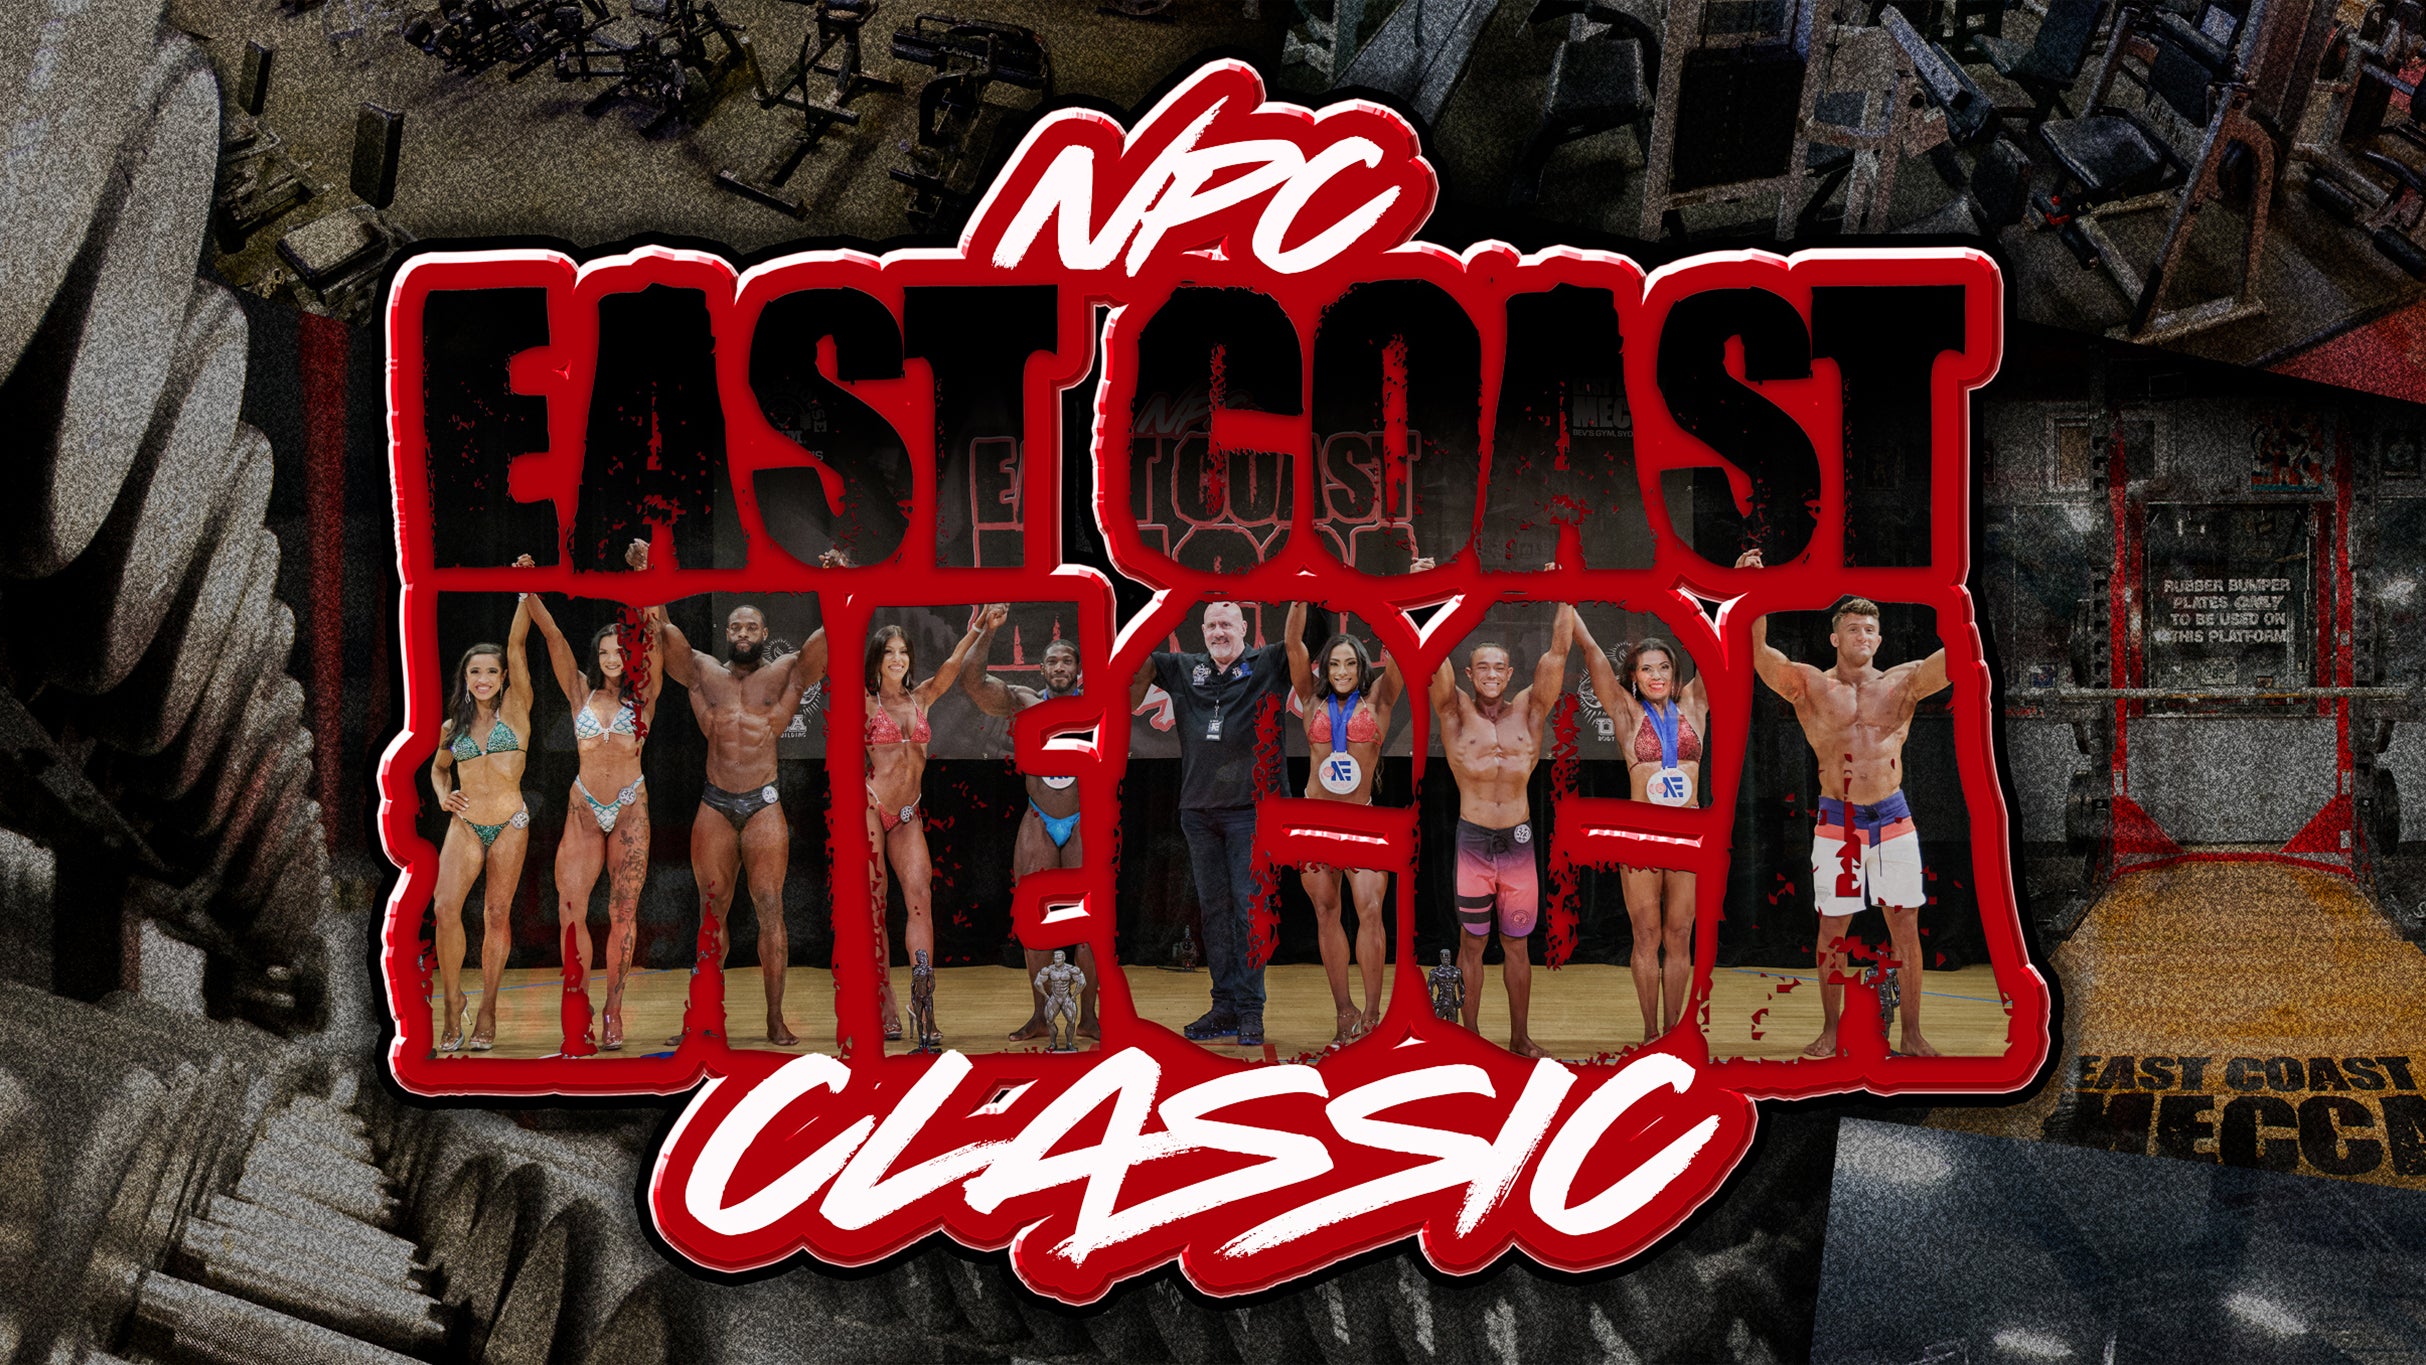 Finals: NPC East Coast Mecca Classic